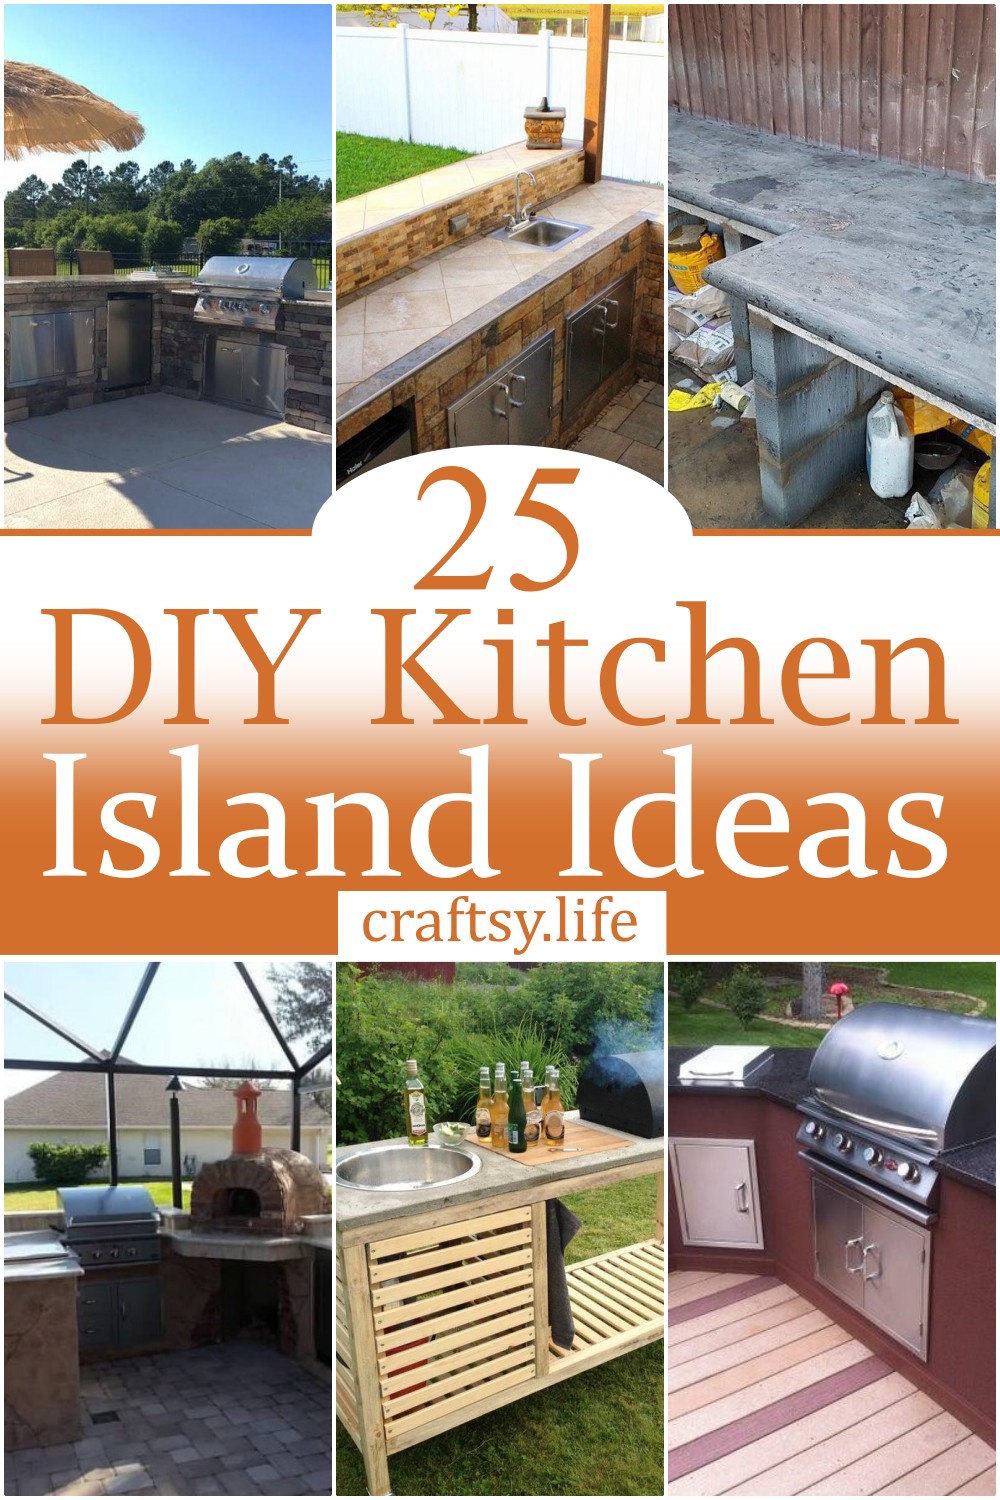 DIY Kitchen Island Ideas 1